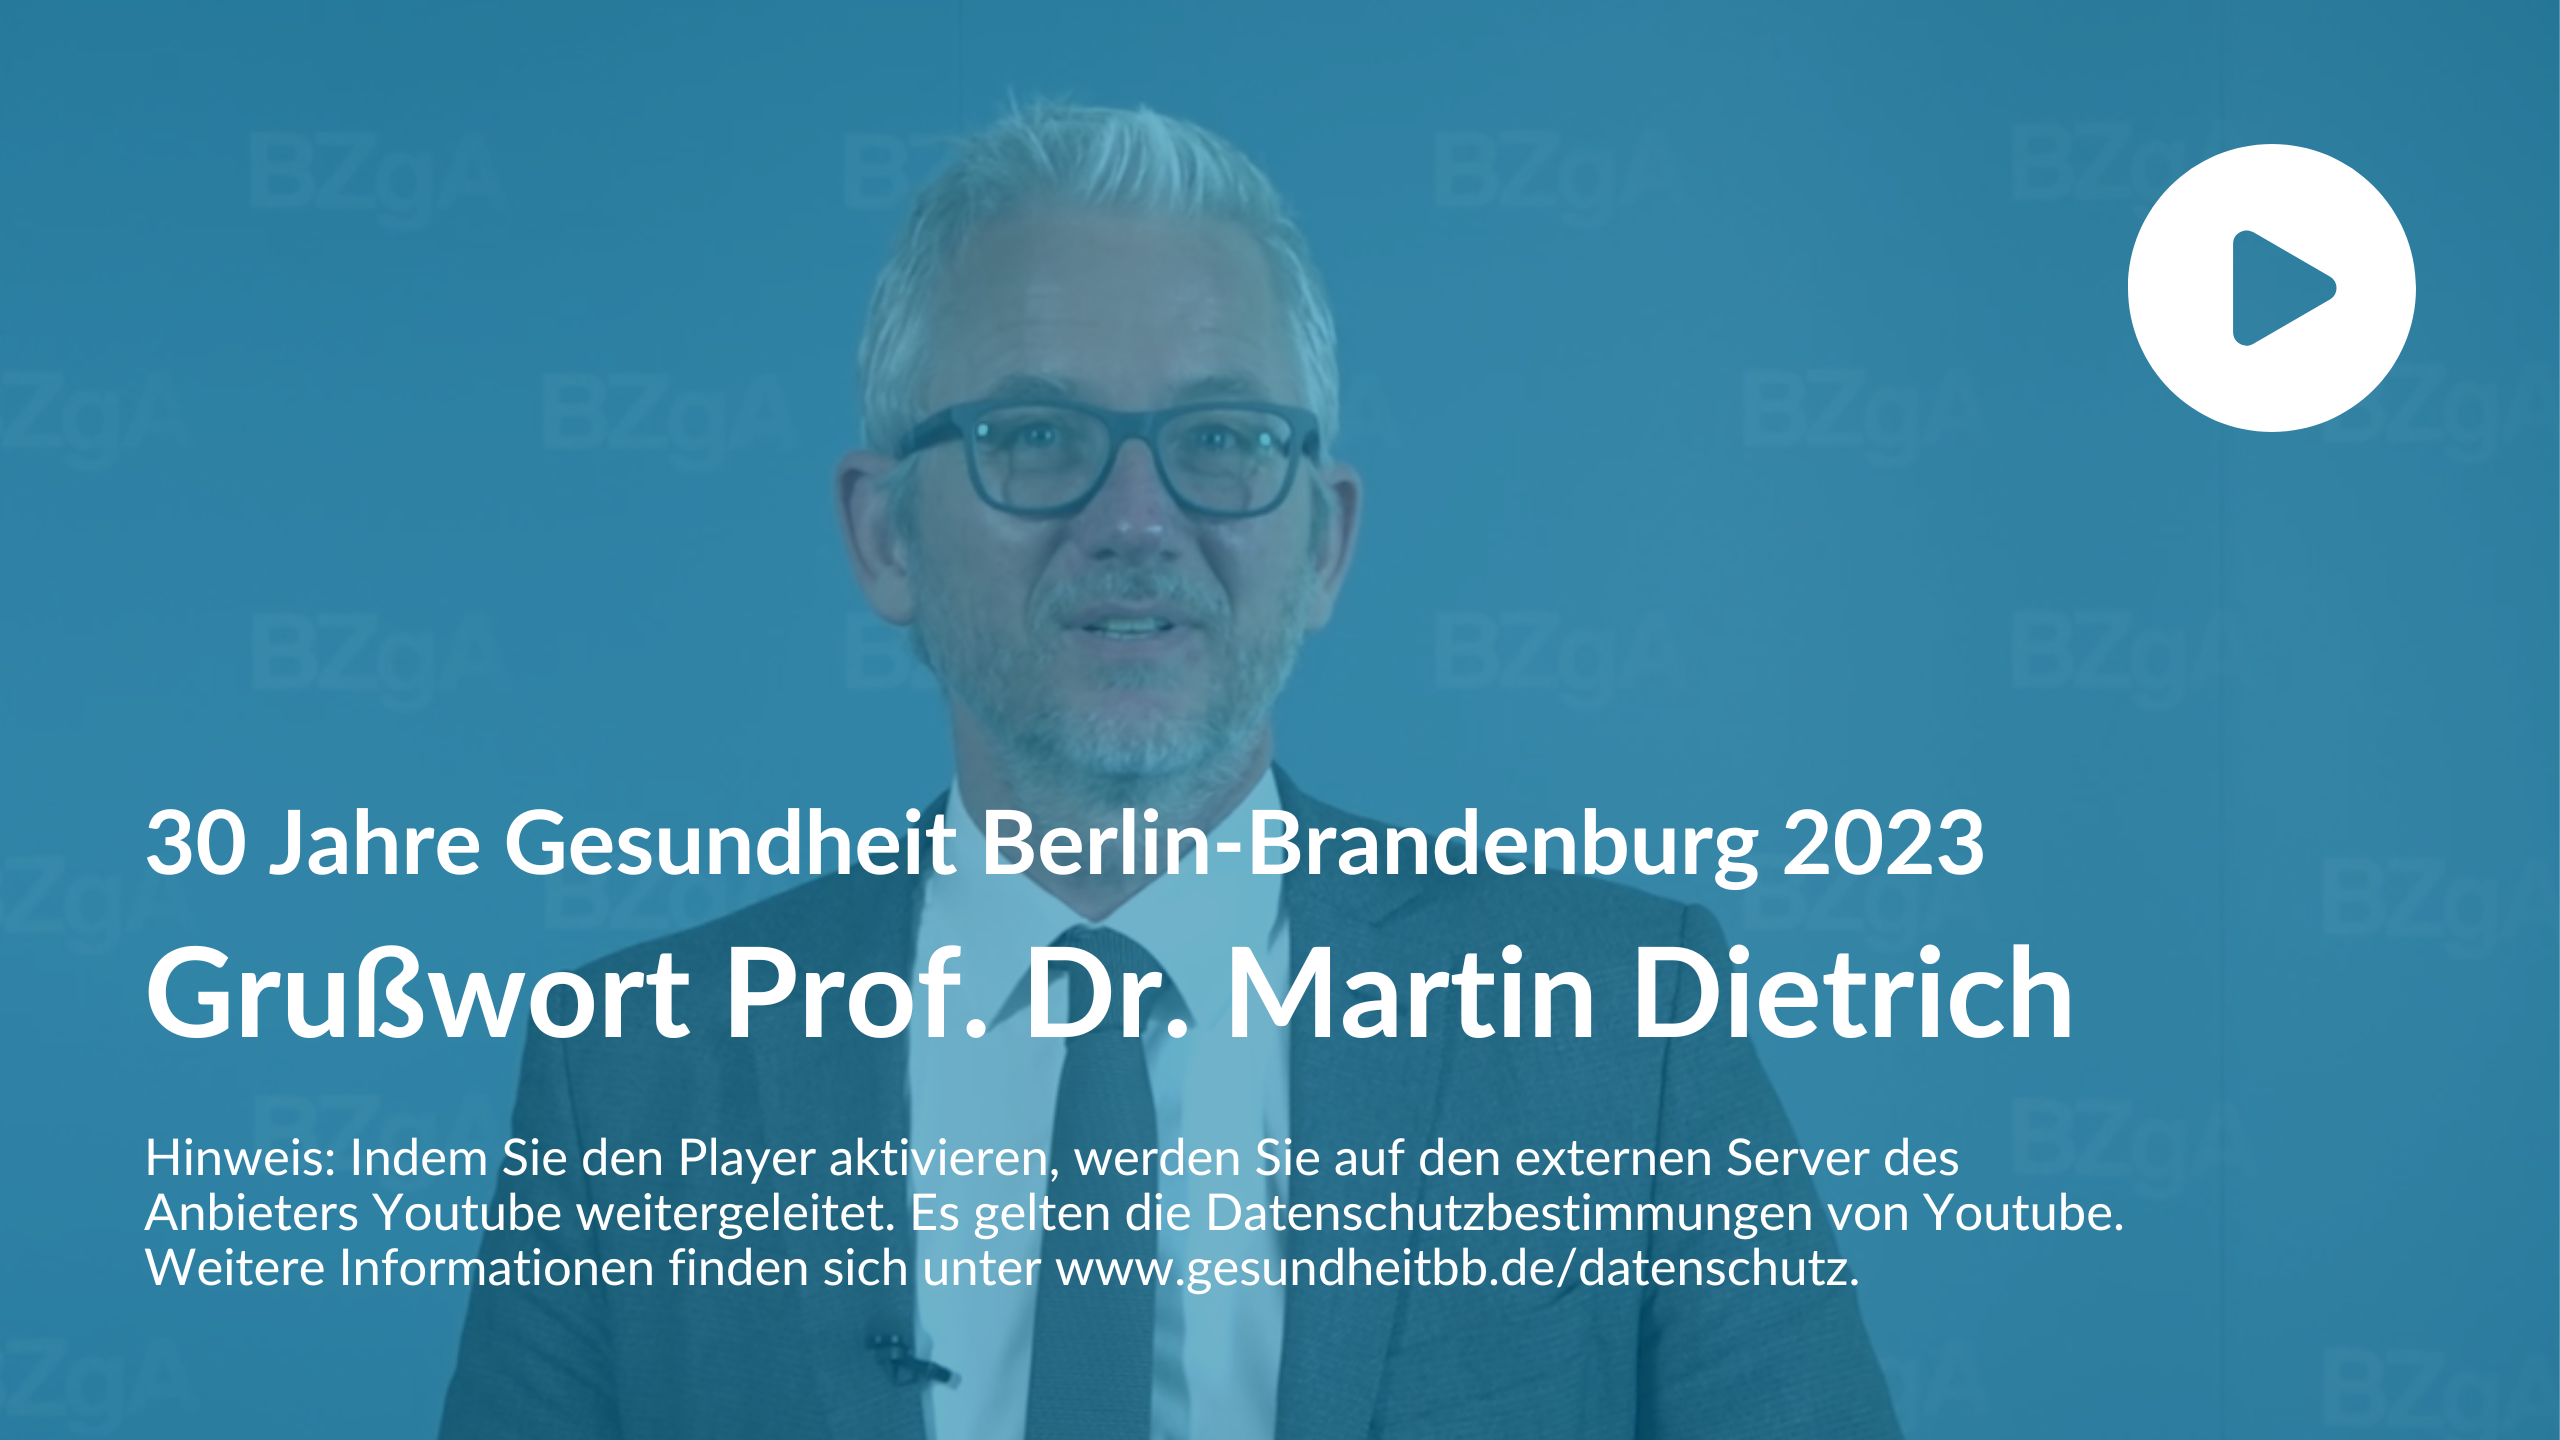 Grußwort Prof. Dr. Martin Dietrich